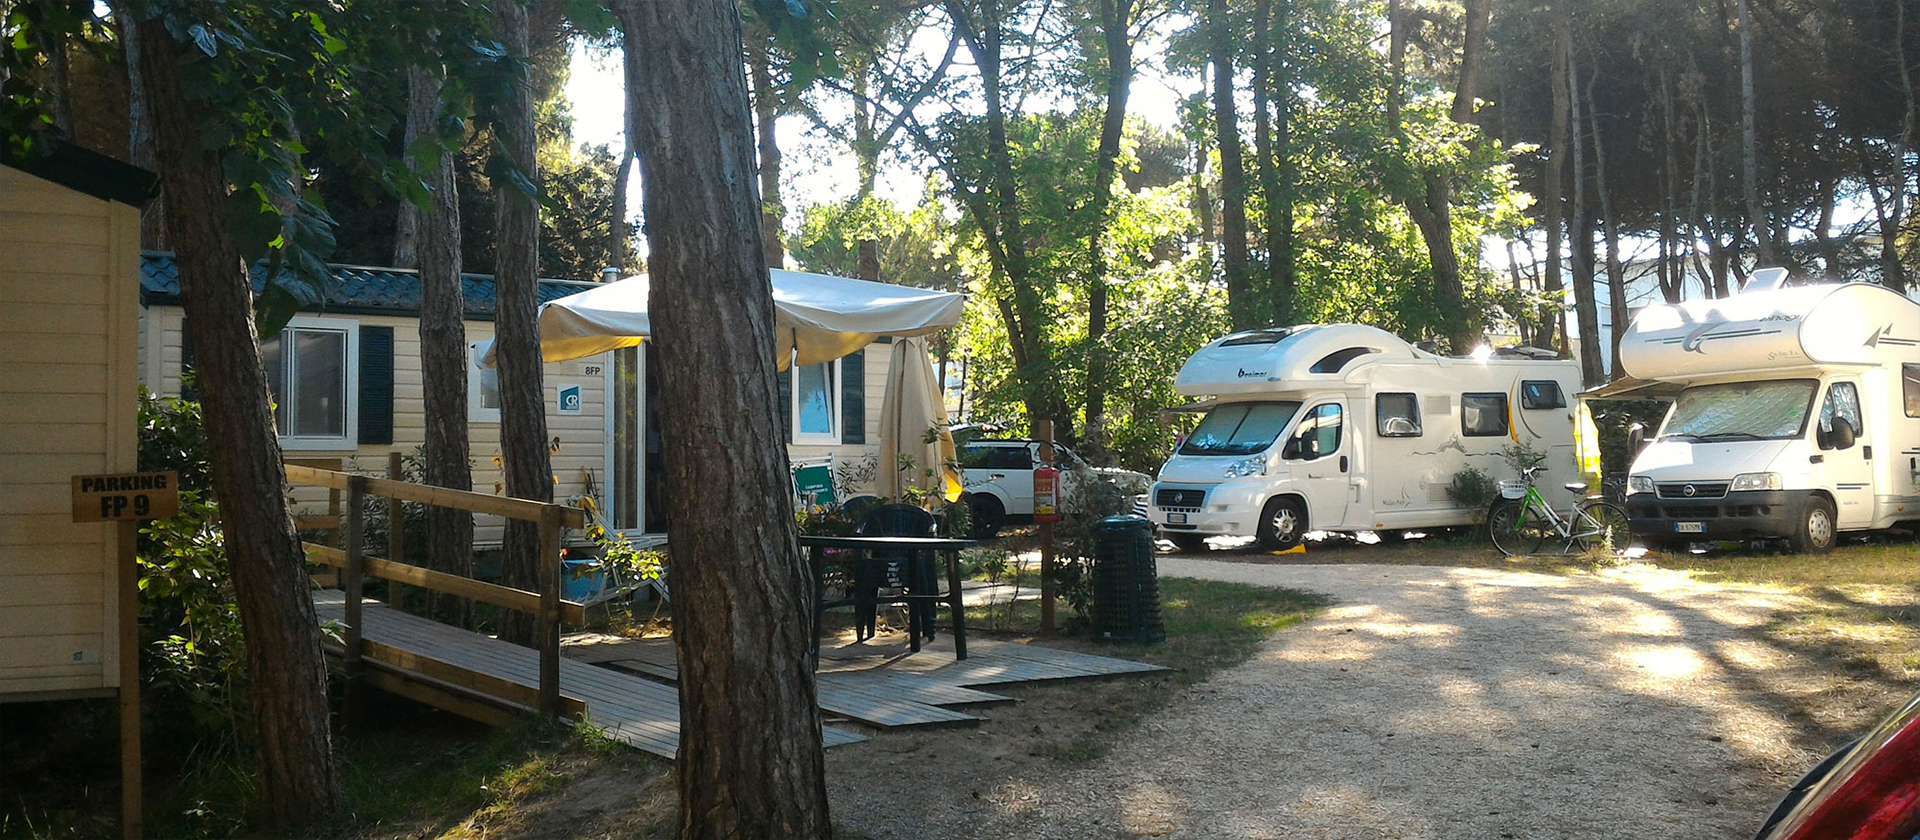 camping-mit-hund-sabbiadoro-italien-maxi-stellplatz-wohnmobile-und-mobilheime